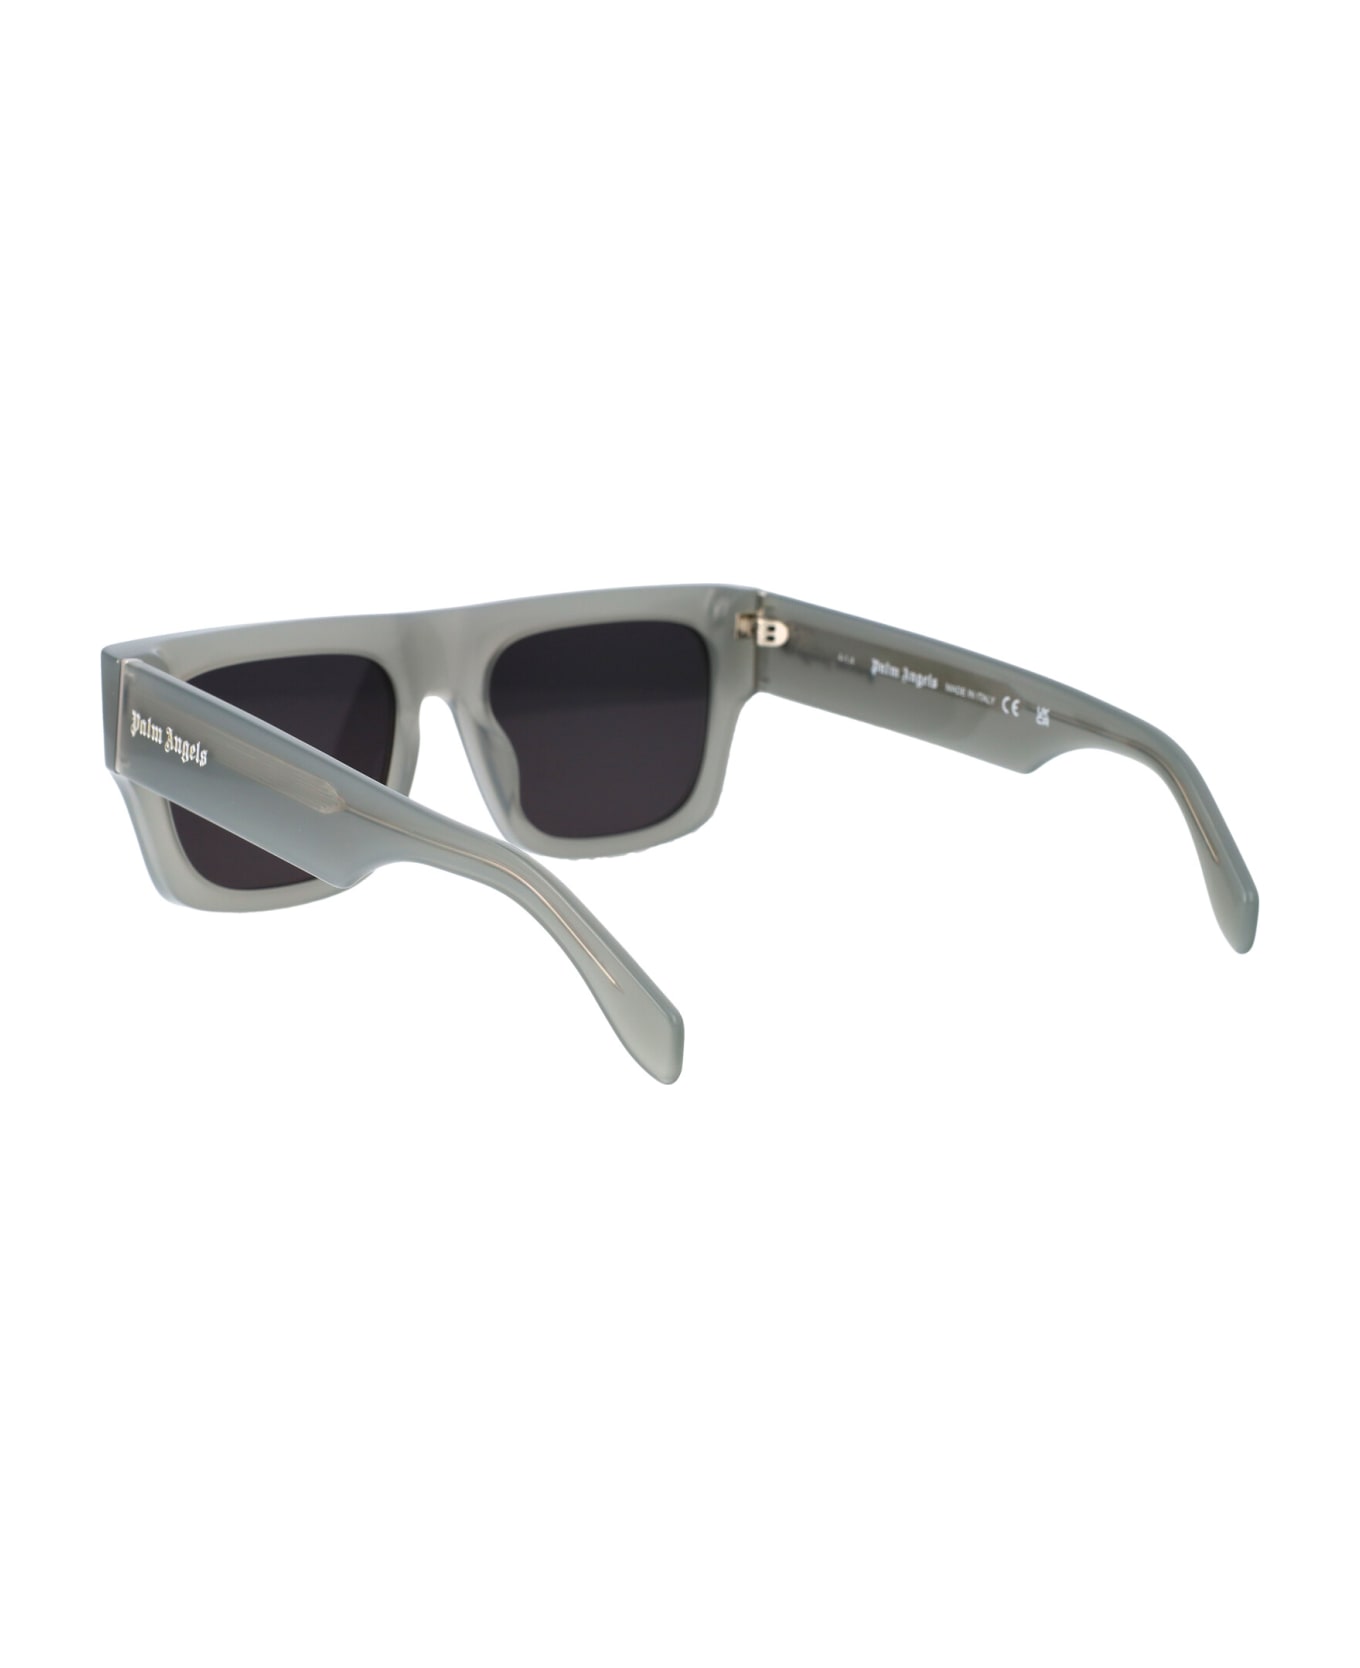 Palm Angels Pixley Sunglasses - 0907 GREY